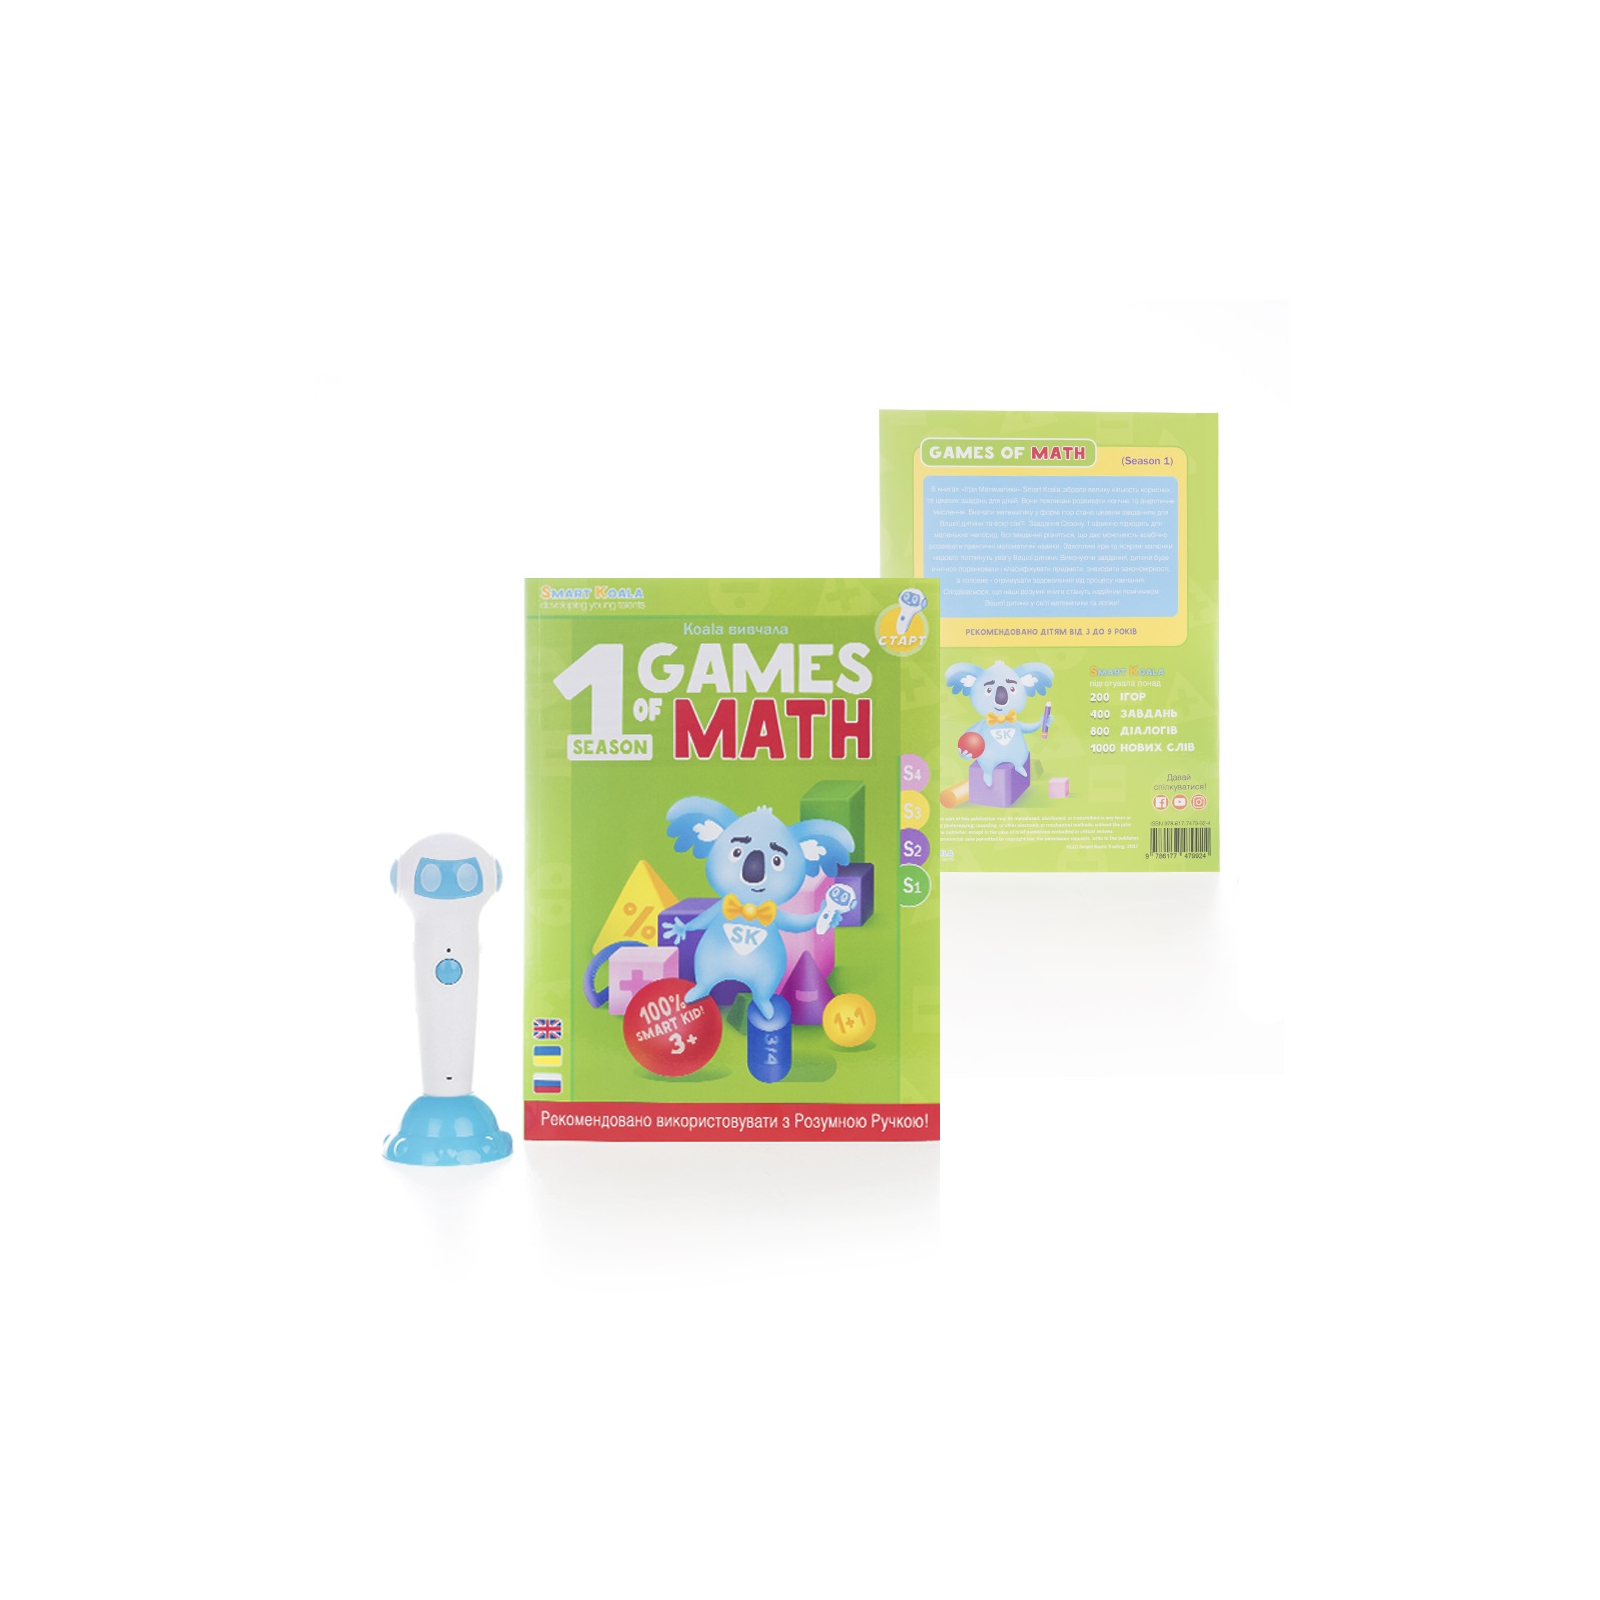 Интерактивная игрушка Smart Koala развивающая книга The Games of Math (Season 1) №1 (SKBGMS1) изображение 2